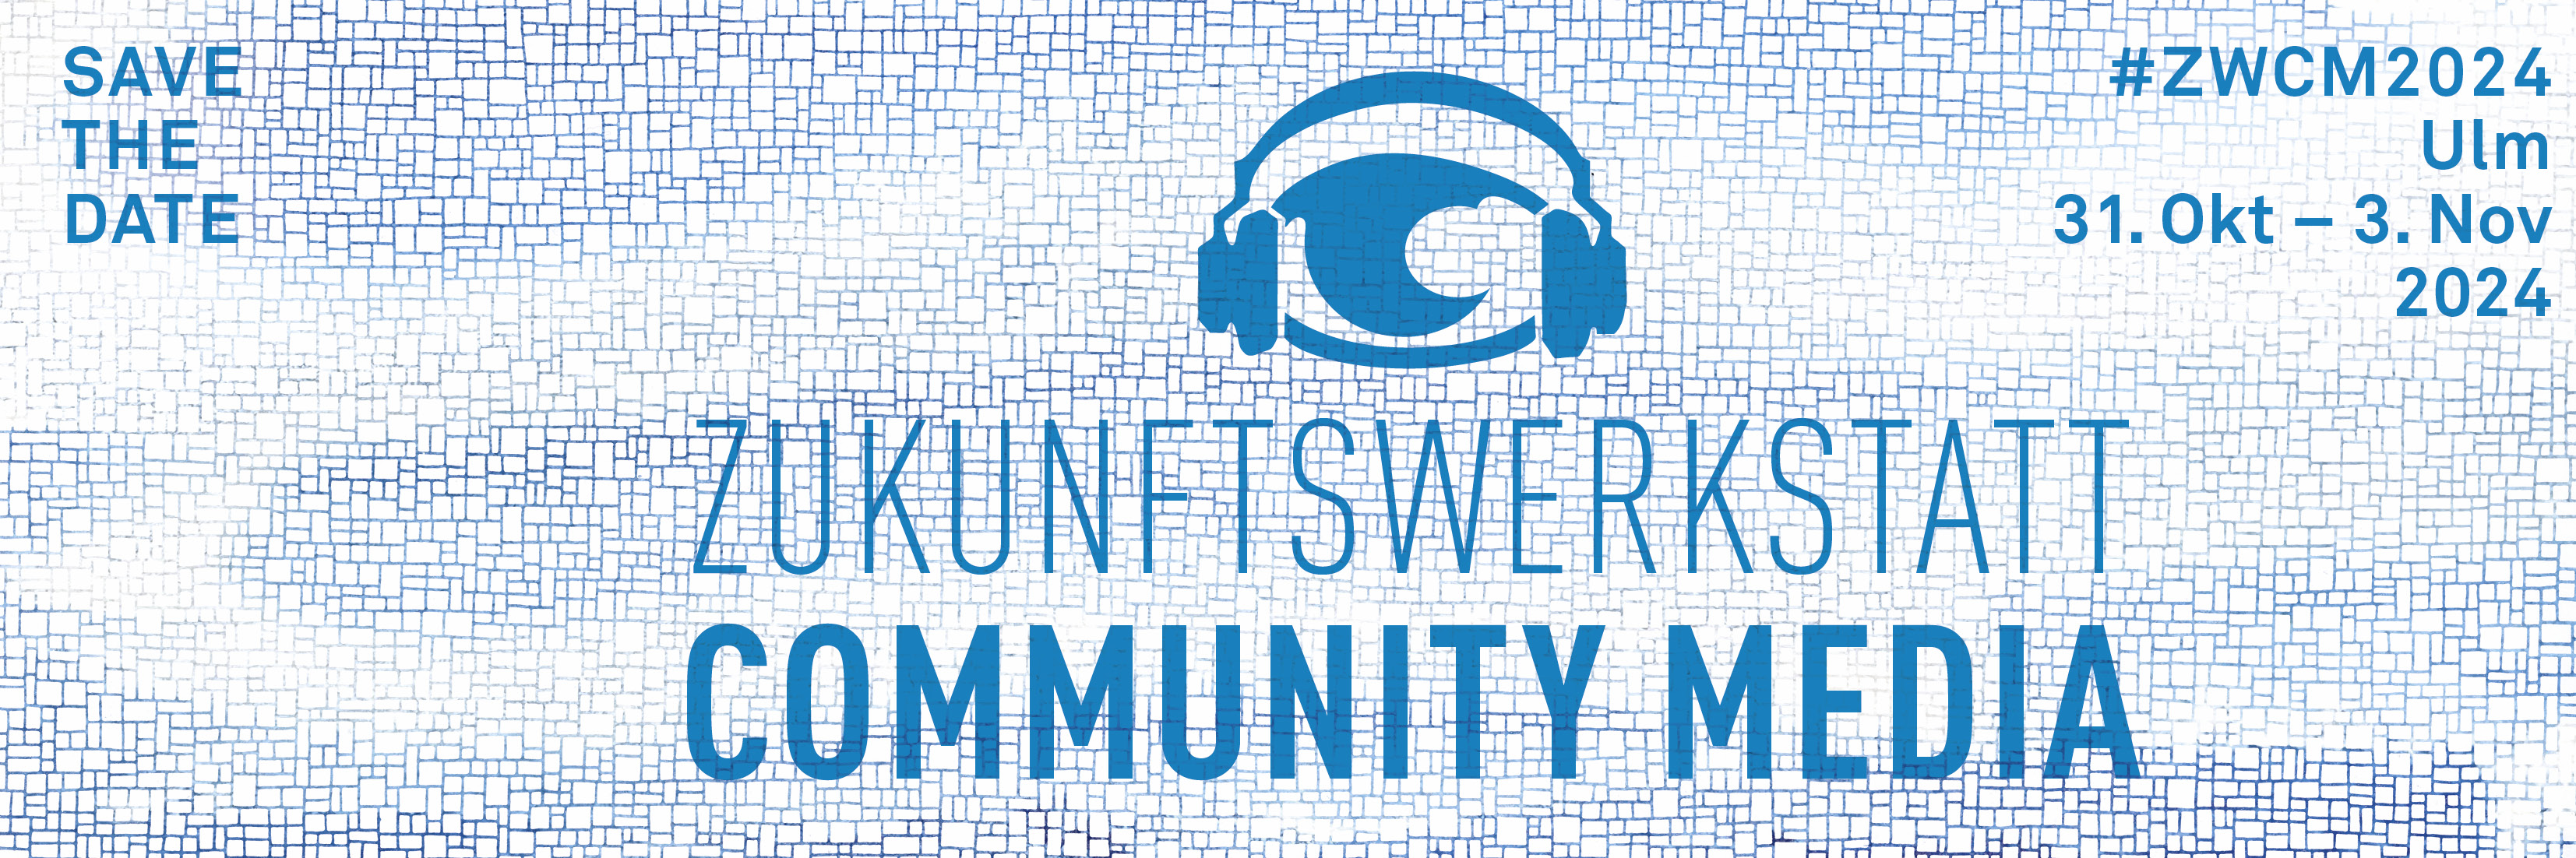 Zukunftswerkstatt Community Media - save the Date - Ulm 31. Okt - 3. Nov. 2024